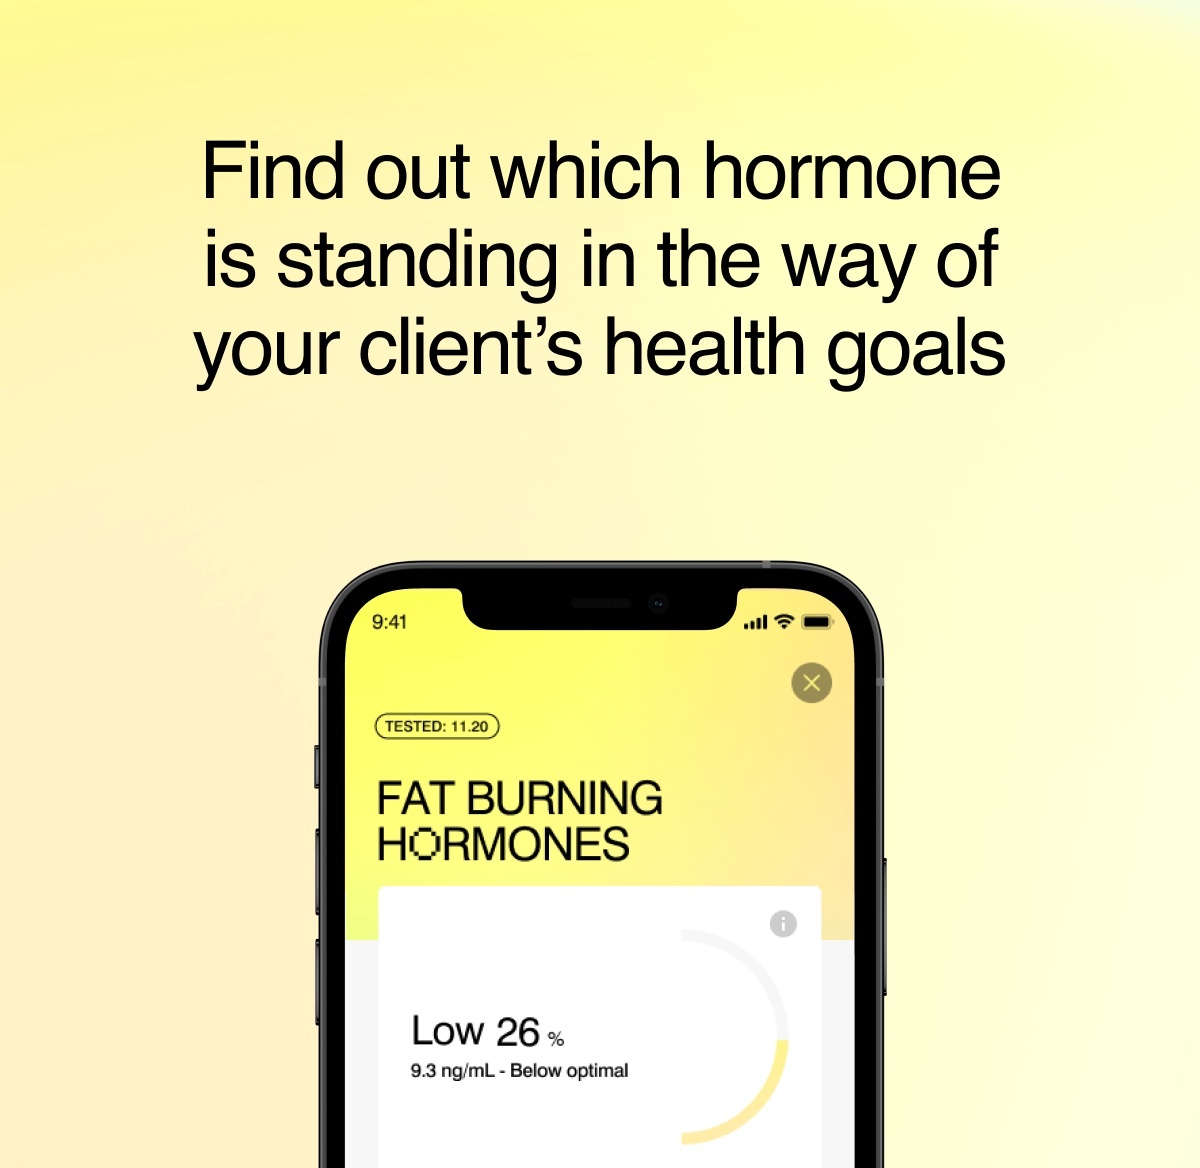 Fat burning hormones